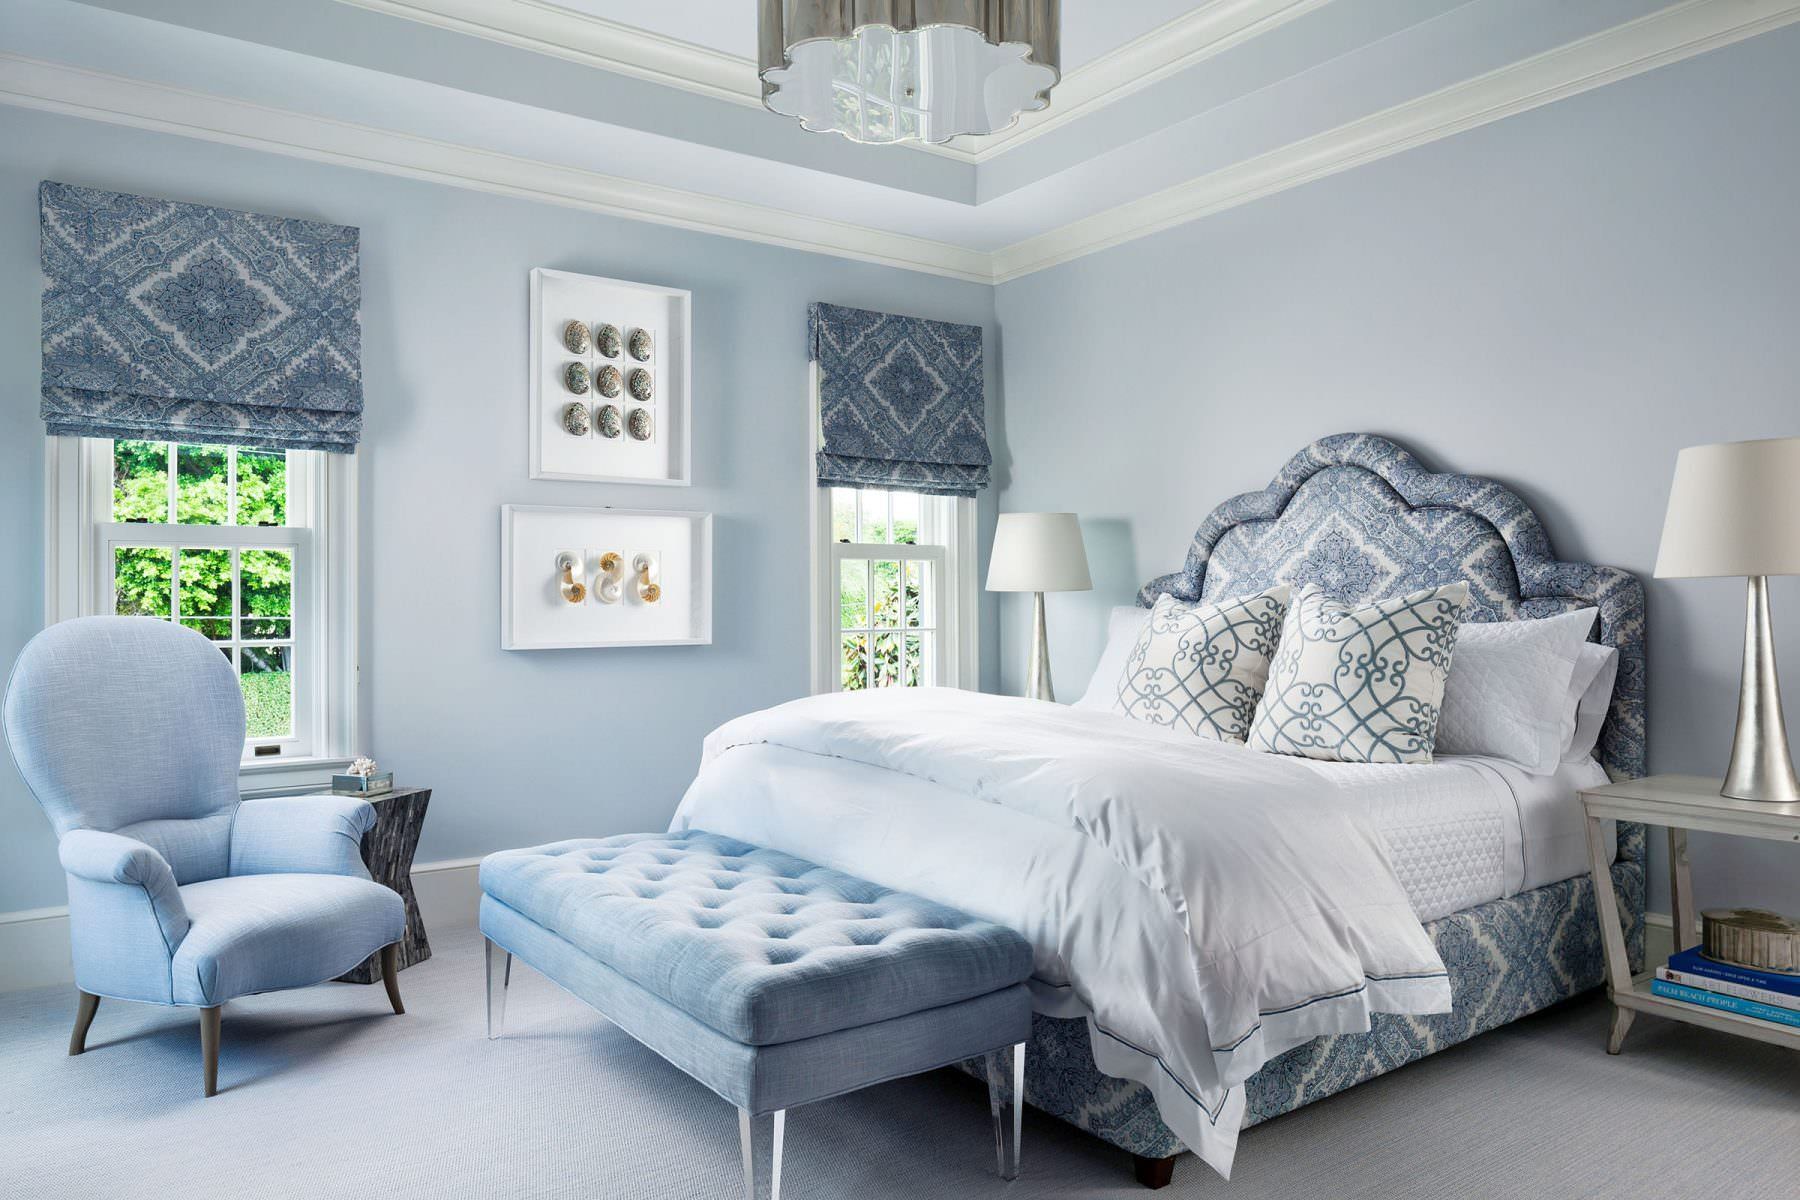 Lót nền phòng ngủ màu xanh ngọc với tấm thảm nỉ lớn cùng tông màu đem lại không gian tươi sáng, sạch sẽ